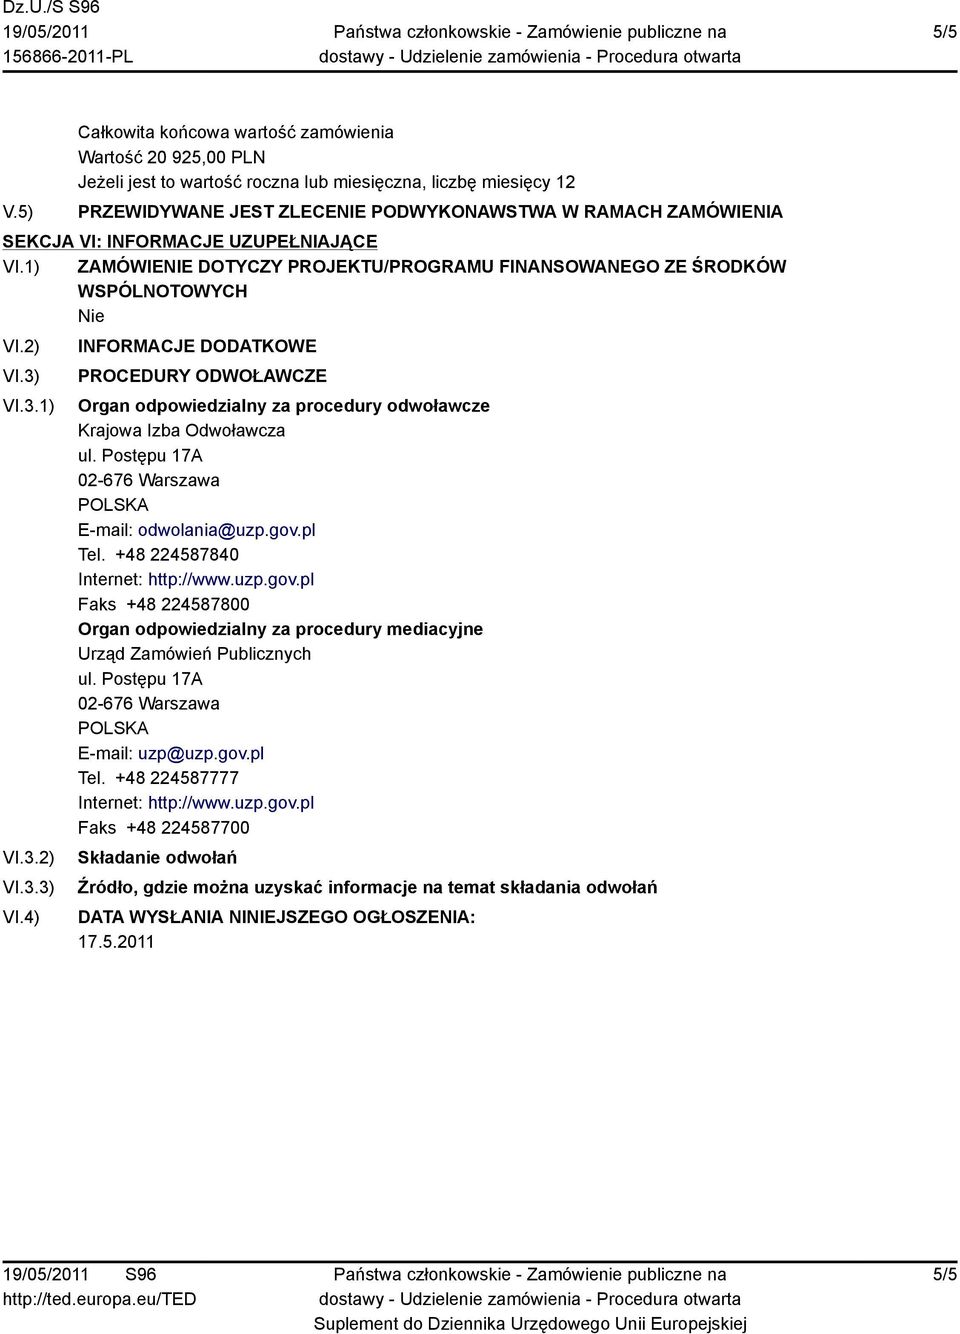 Postępu 17A 02-676 Warszawa E-mail: odwolania@uzp.gov.pl Tel. +48 224587840 Internet: http://www.uzp.gov.pl Faks +48 224587800 Organ odpowiedzialny za procedury mediacyjne Urząd Zamówień Publicznych ul.